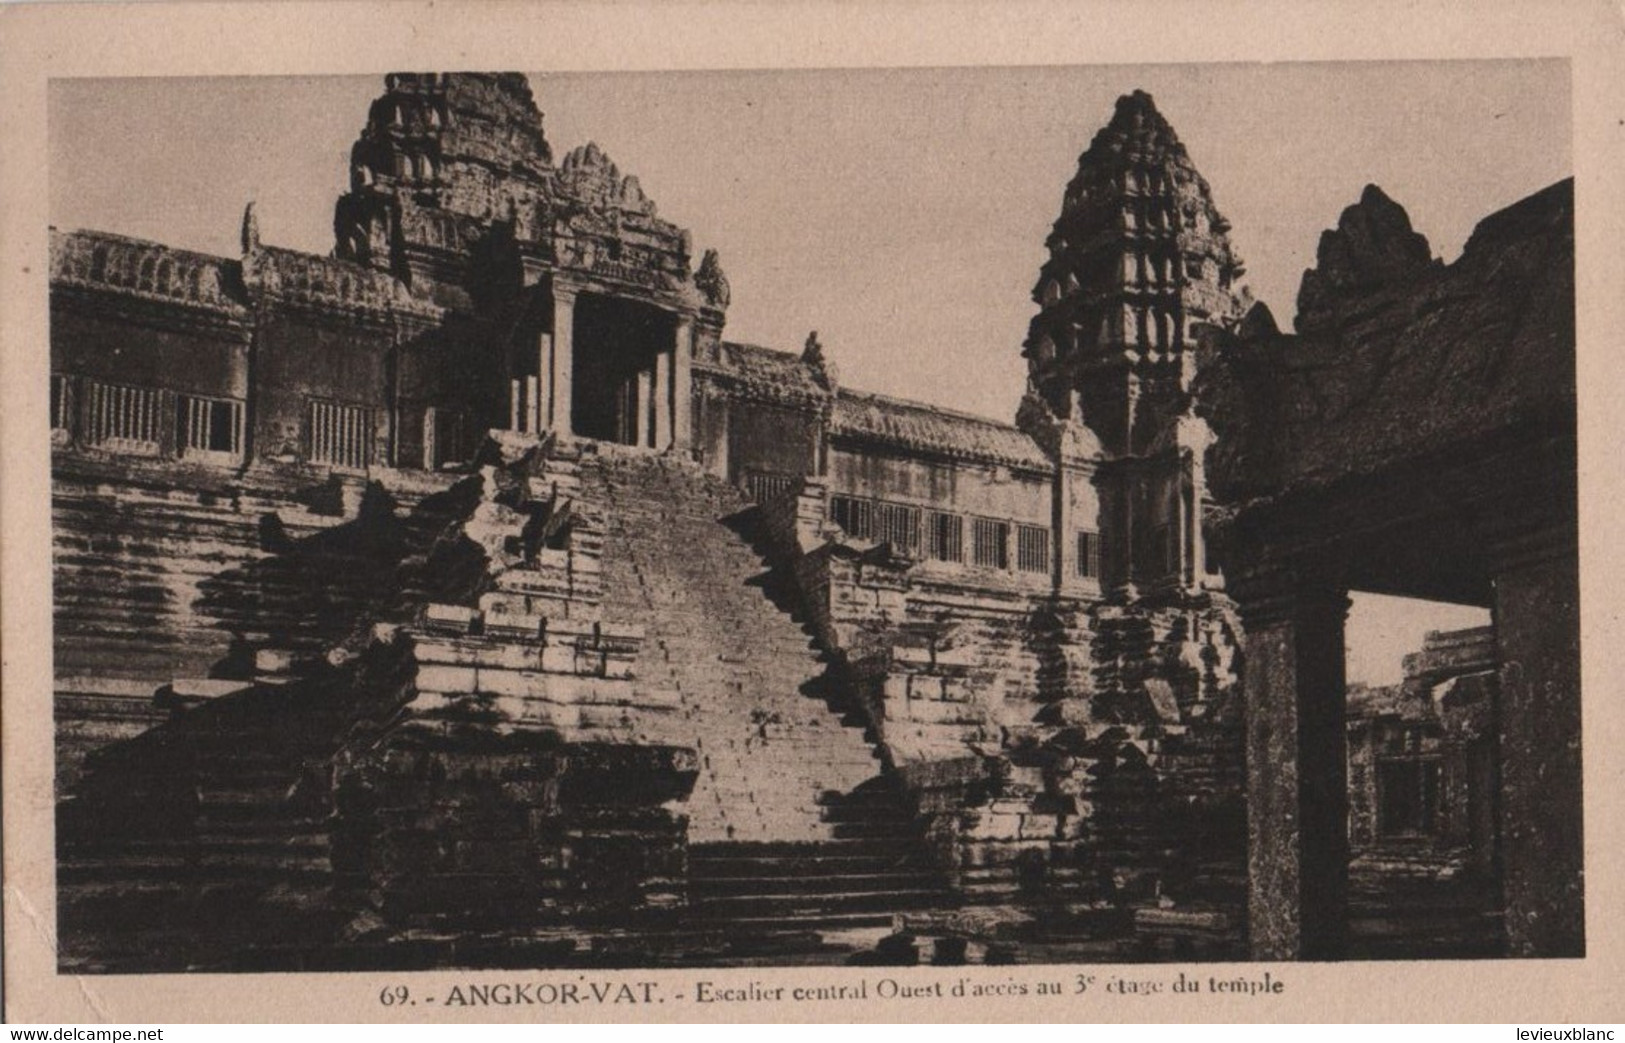 CAMBODGE /ANGKOR VAT/Esdcalier Central Ouest D'accés Au 3éme étage Du Temple /Vers 1910-1920     CPDIV358 - Kambodscha